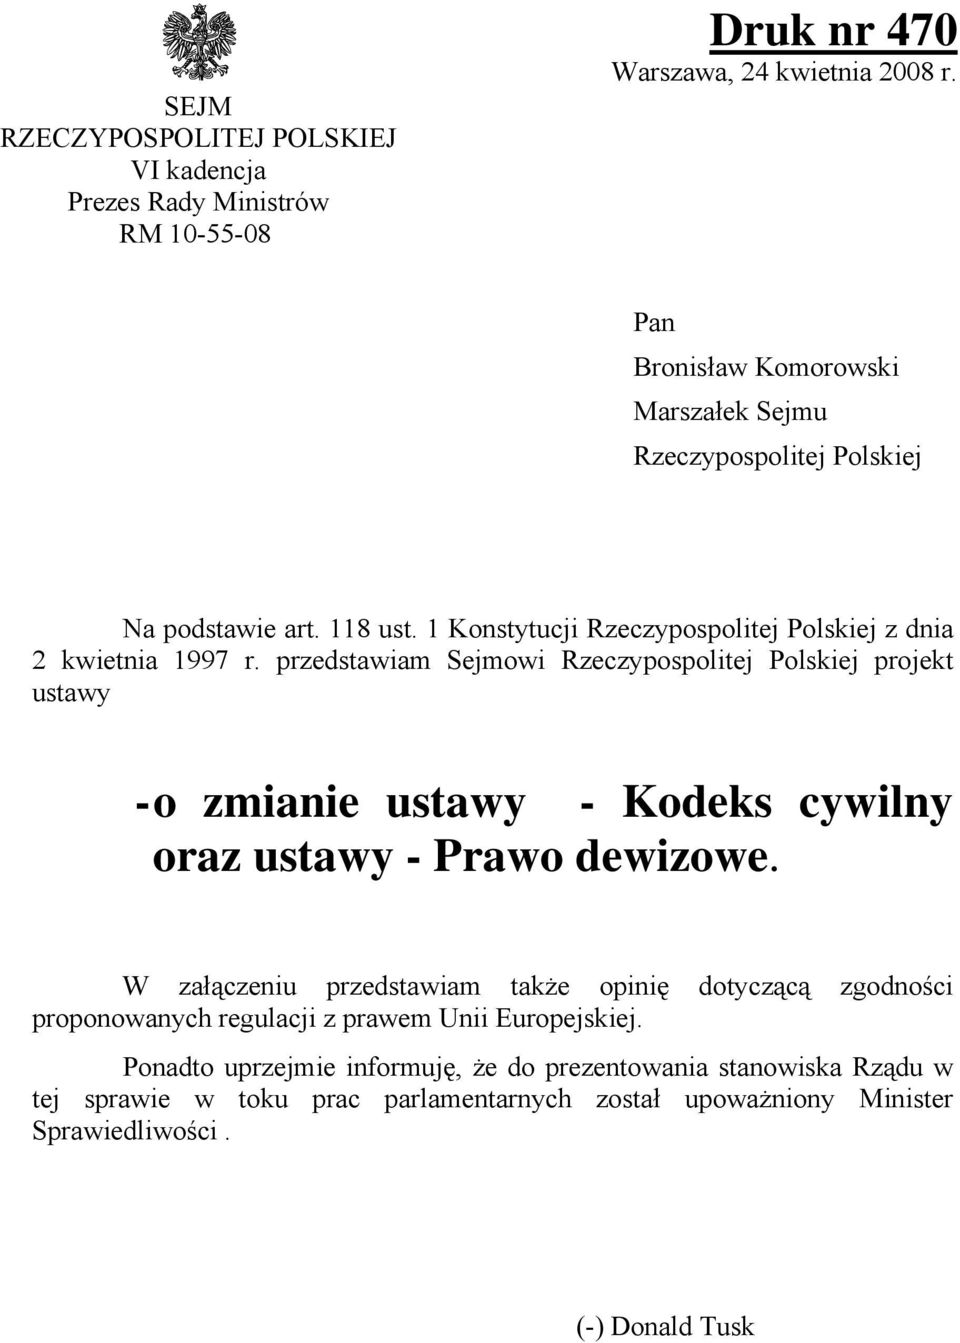 przedstawiam Sejmowi Rzeczypospolitej Polskiej projekt ustawy - o zmianie ustawy - Kodeks cywilny oraz ustawy - Prawo dewizowe.